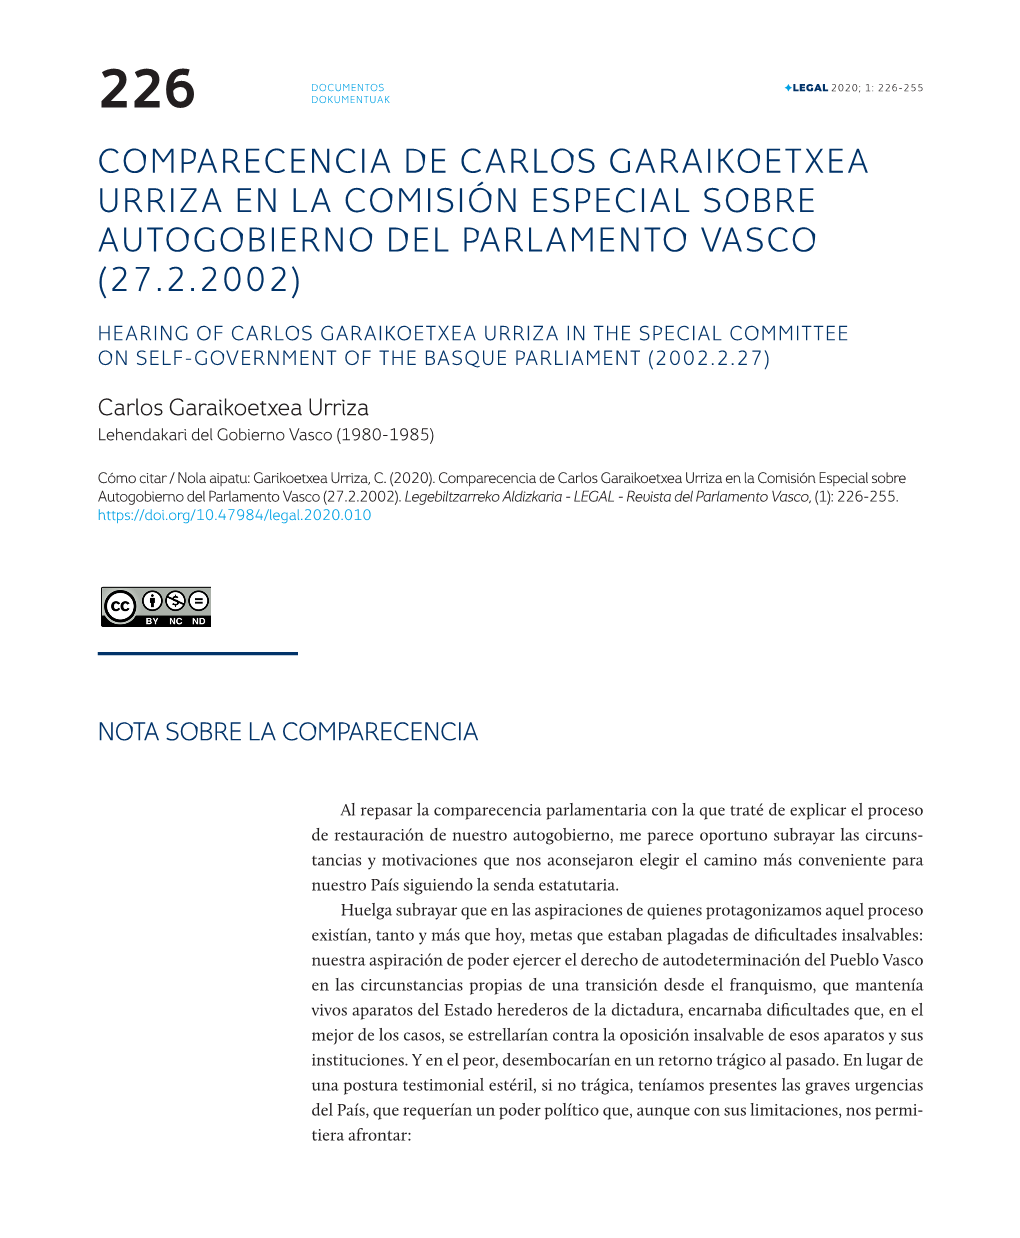 Comparecencia De Carlos Garaikoetxea Urriza En La Comisión Especial Sobre Autogobierno Del Parlamento Vasco (27.2.2002)